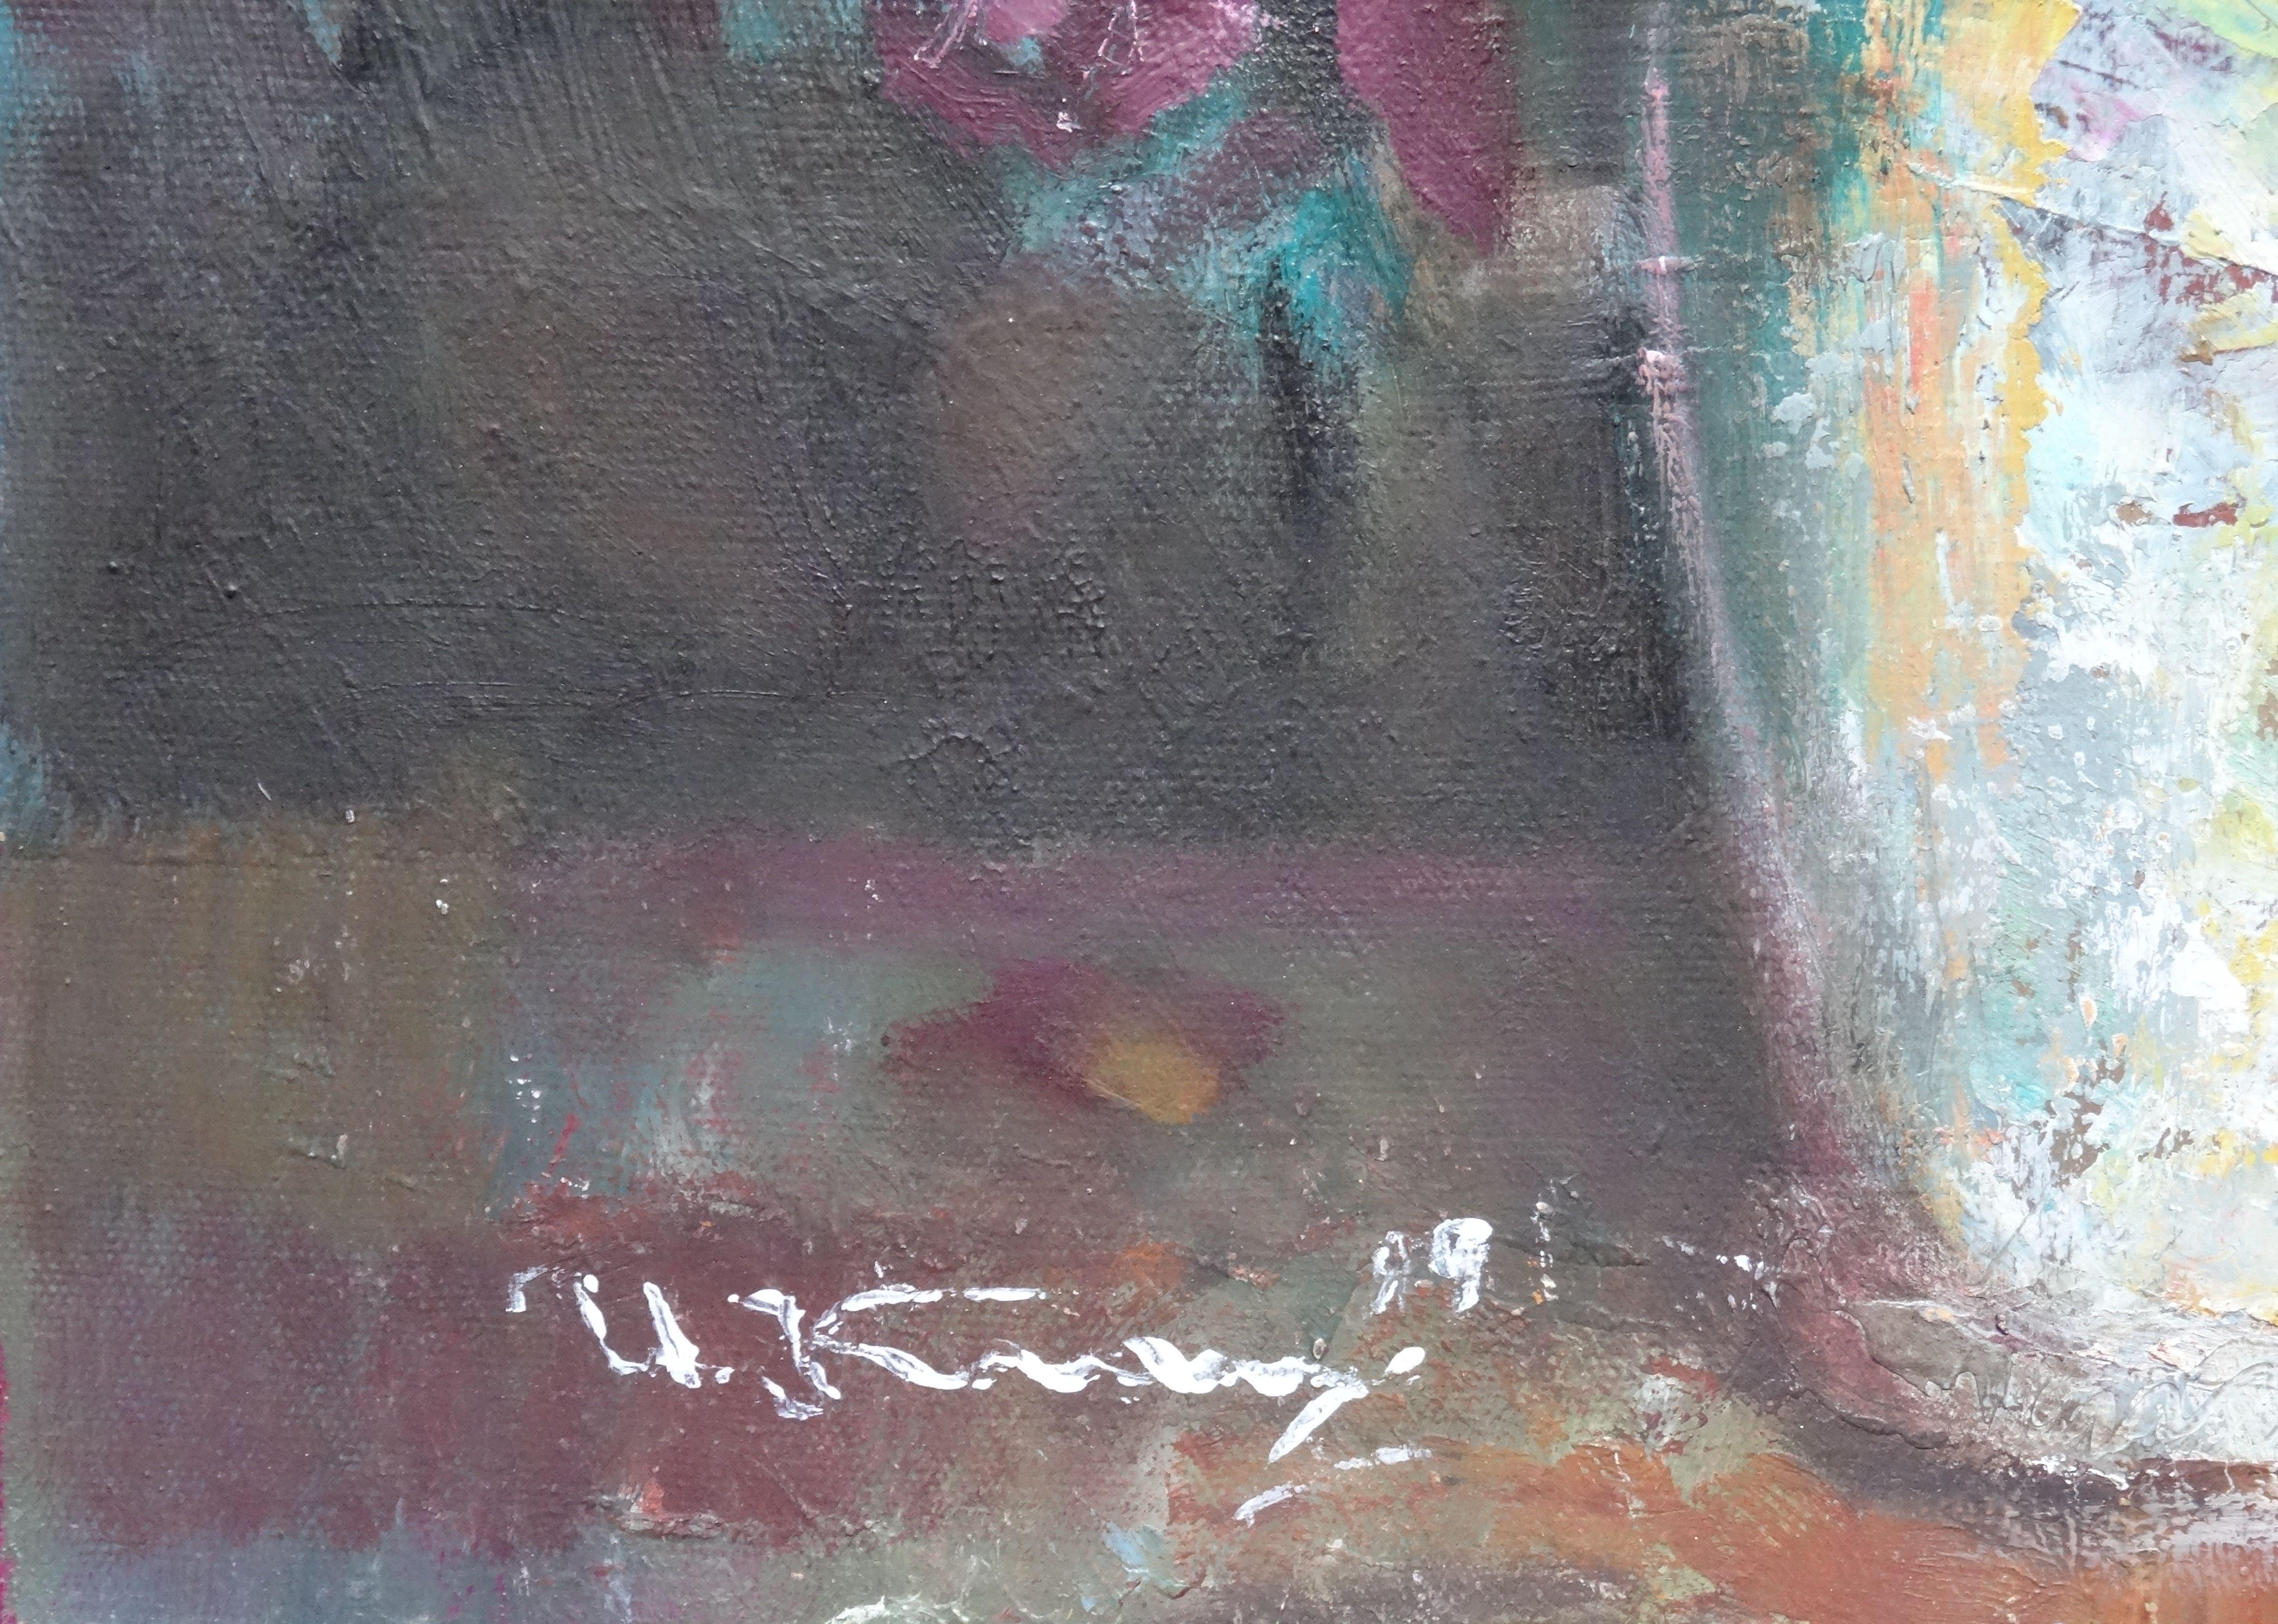 Flowers in a vase. Oil on cardboard, 51x36 cm - Painting by Uldis Krauze